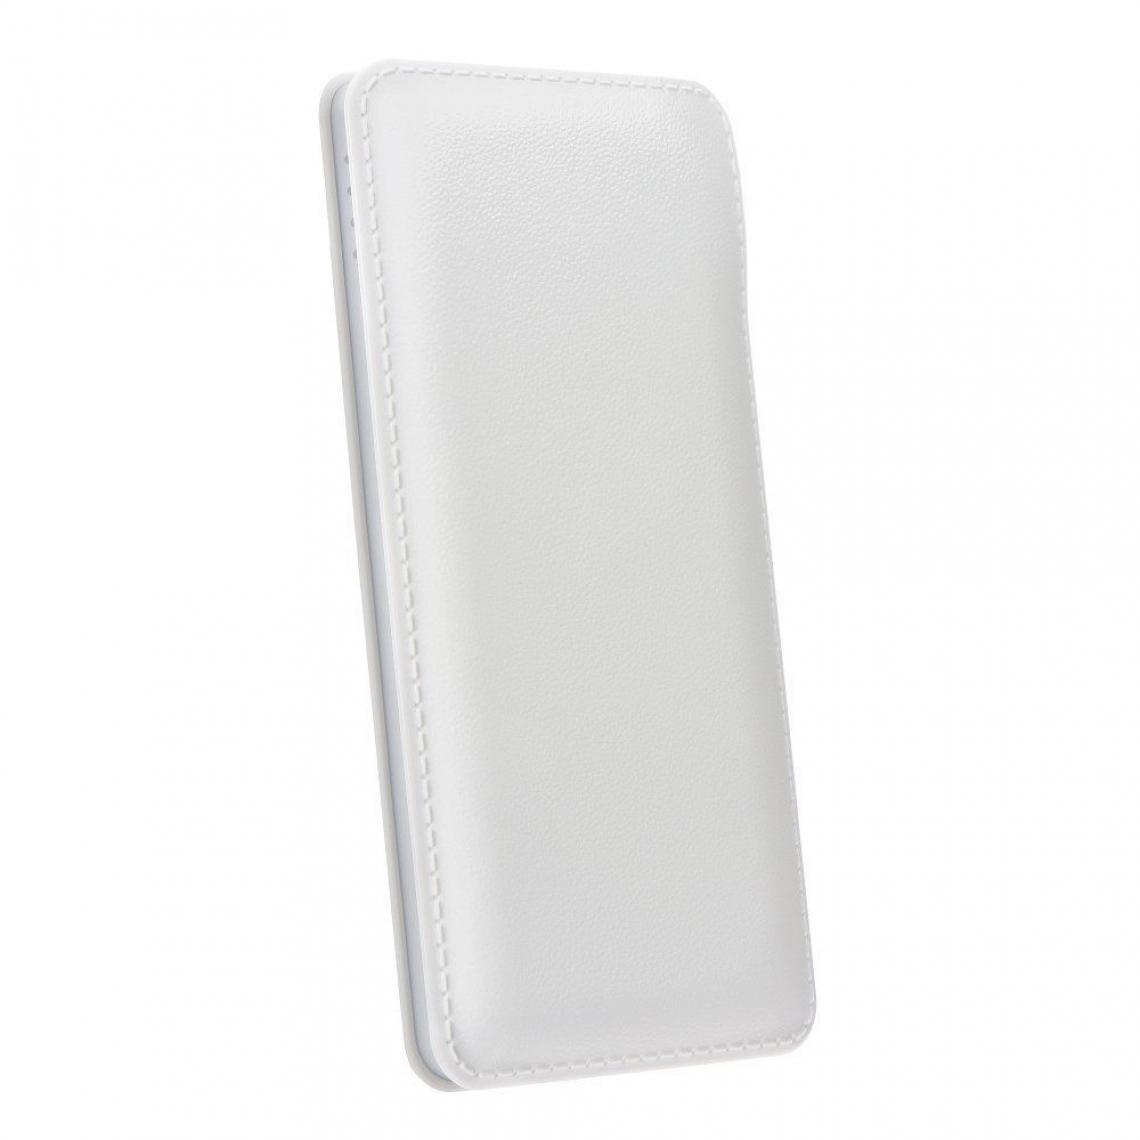 Ozzzo - Chargeur batterie externe 30000 mAh powerbank ozzzo blanc pour Tablette Tactile Nokia LUMIA 2520 - Autres accessoires smartphone